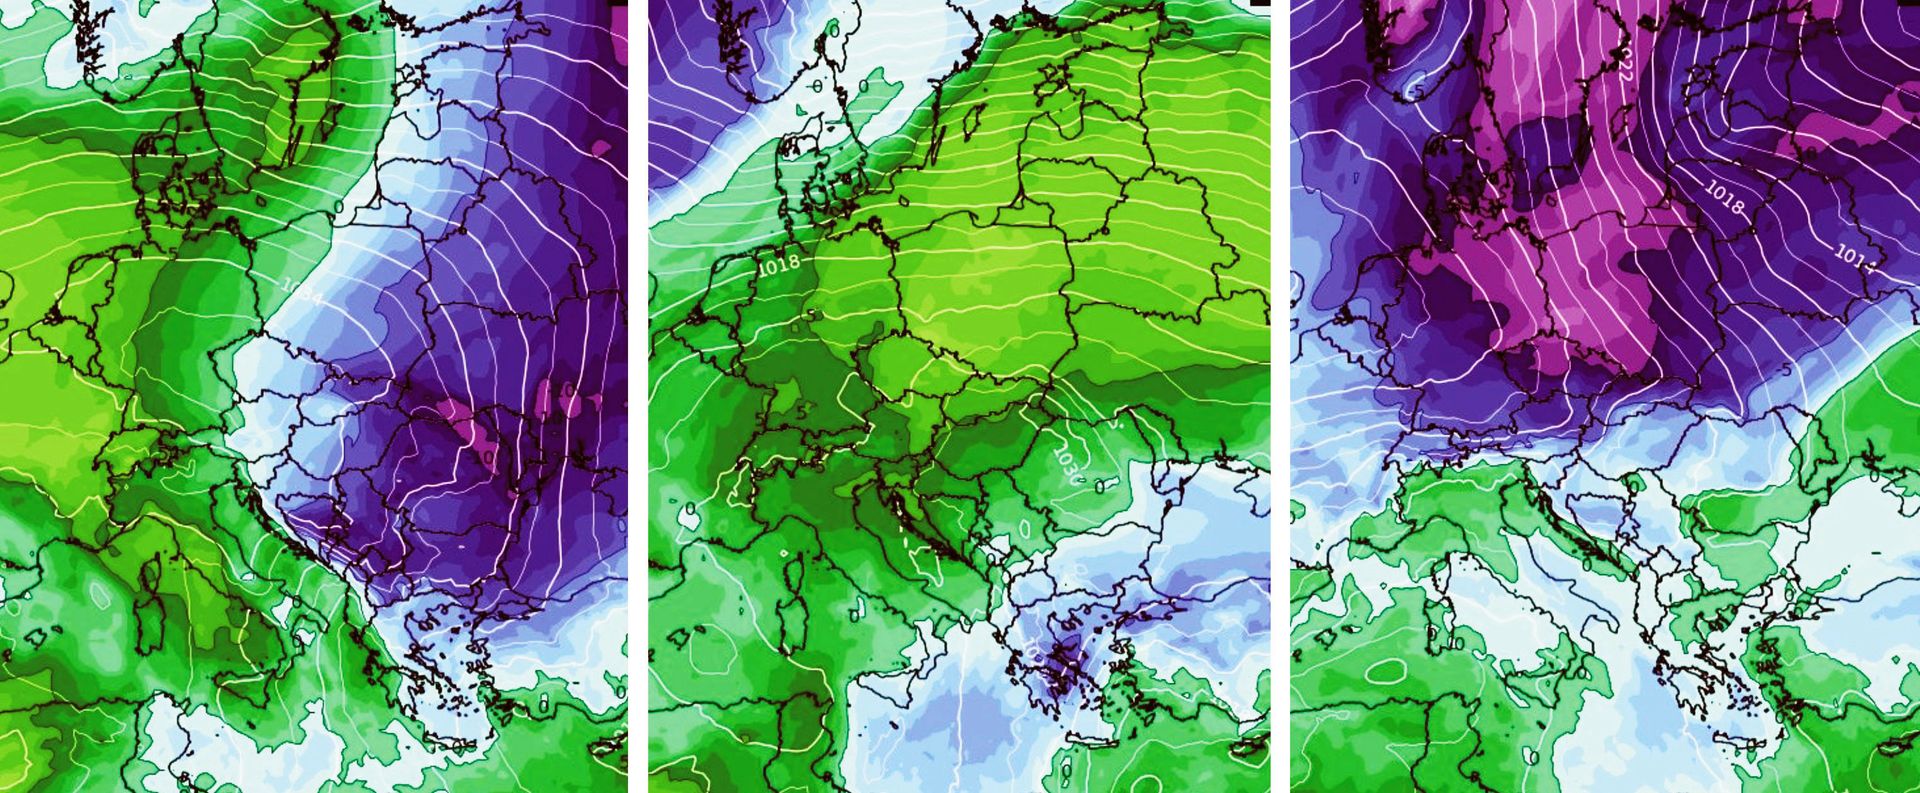 Już w środę ociepli się na północnym zachodzie (zielony kolor po lewej), ale po kilku cieplejszych dniach w sobotę znów zrobi się chłodniej (fiolet po prawej)